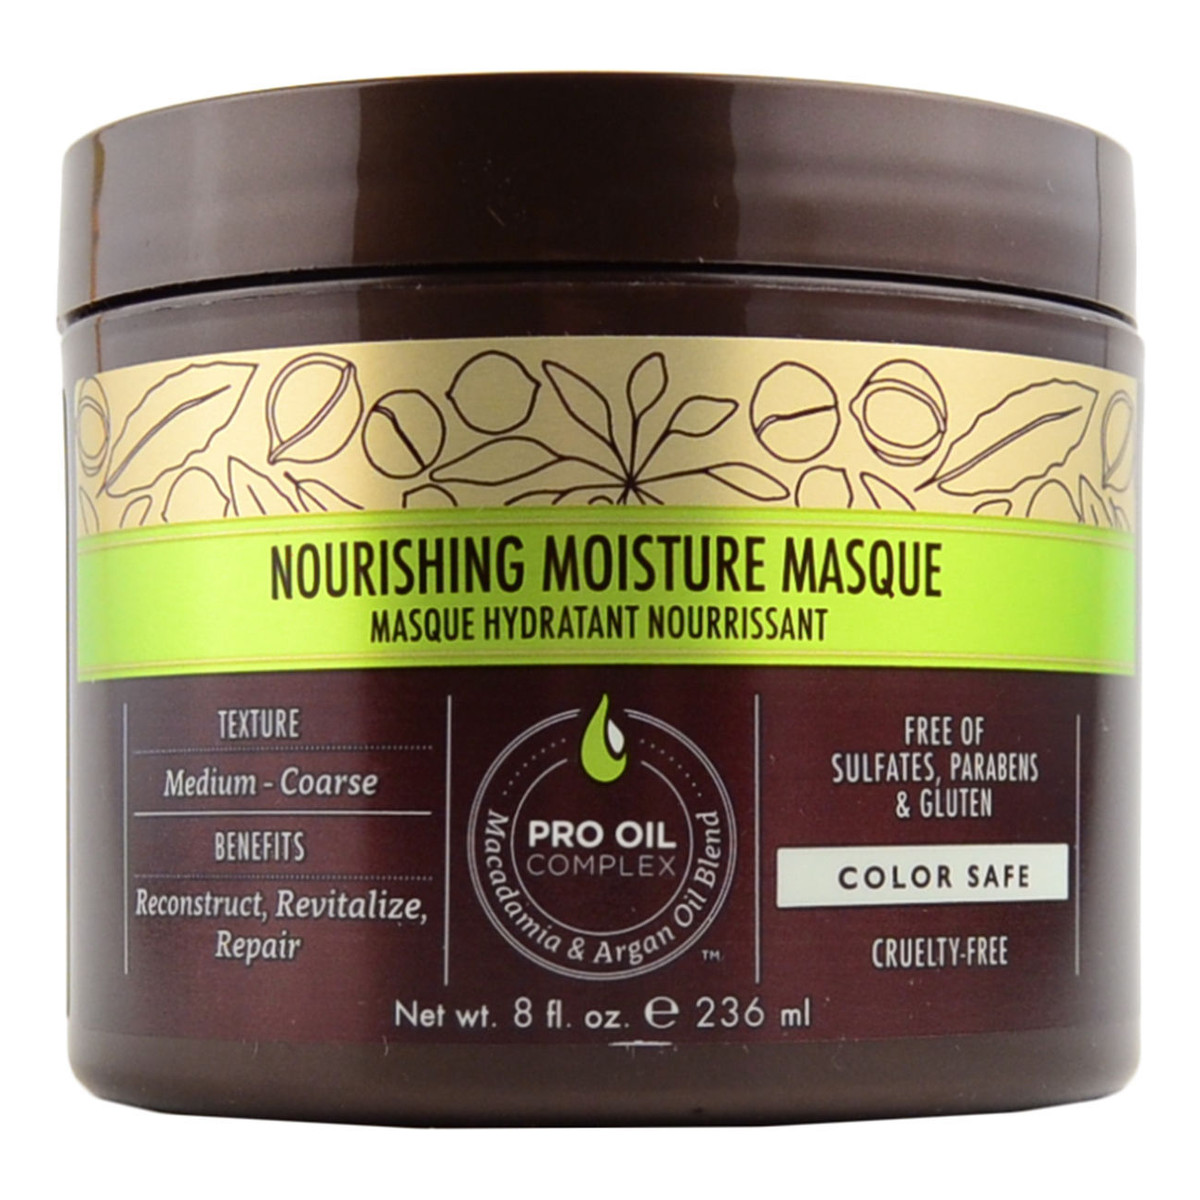 Macadamia Professional Nourishing Moisture Masque Maska do włosów suchych 236ml